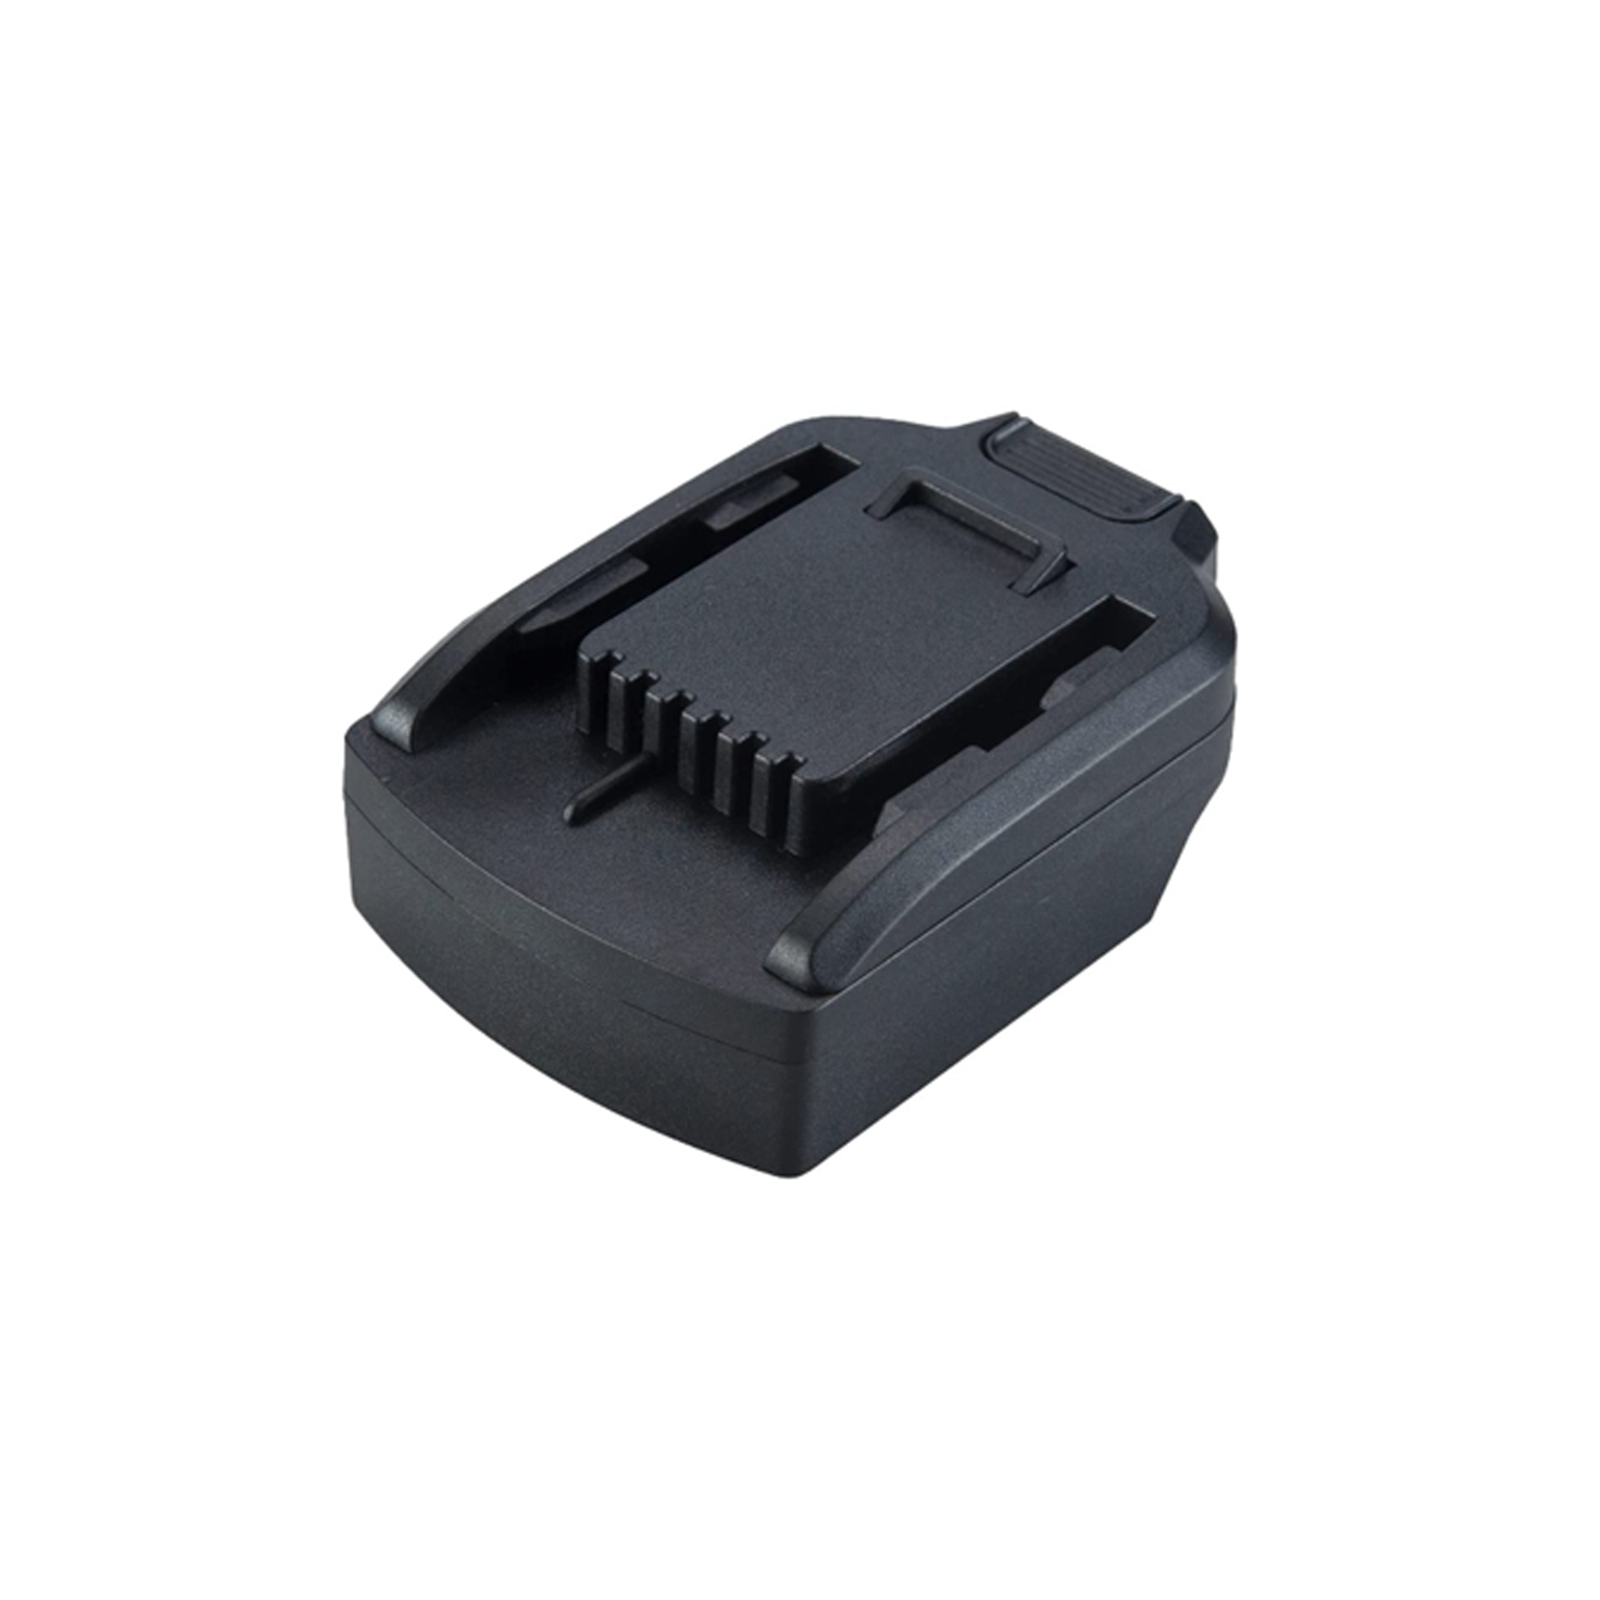 Battery Adapter Converter for Makita 18v Bl Series to Worx 20v Converter